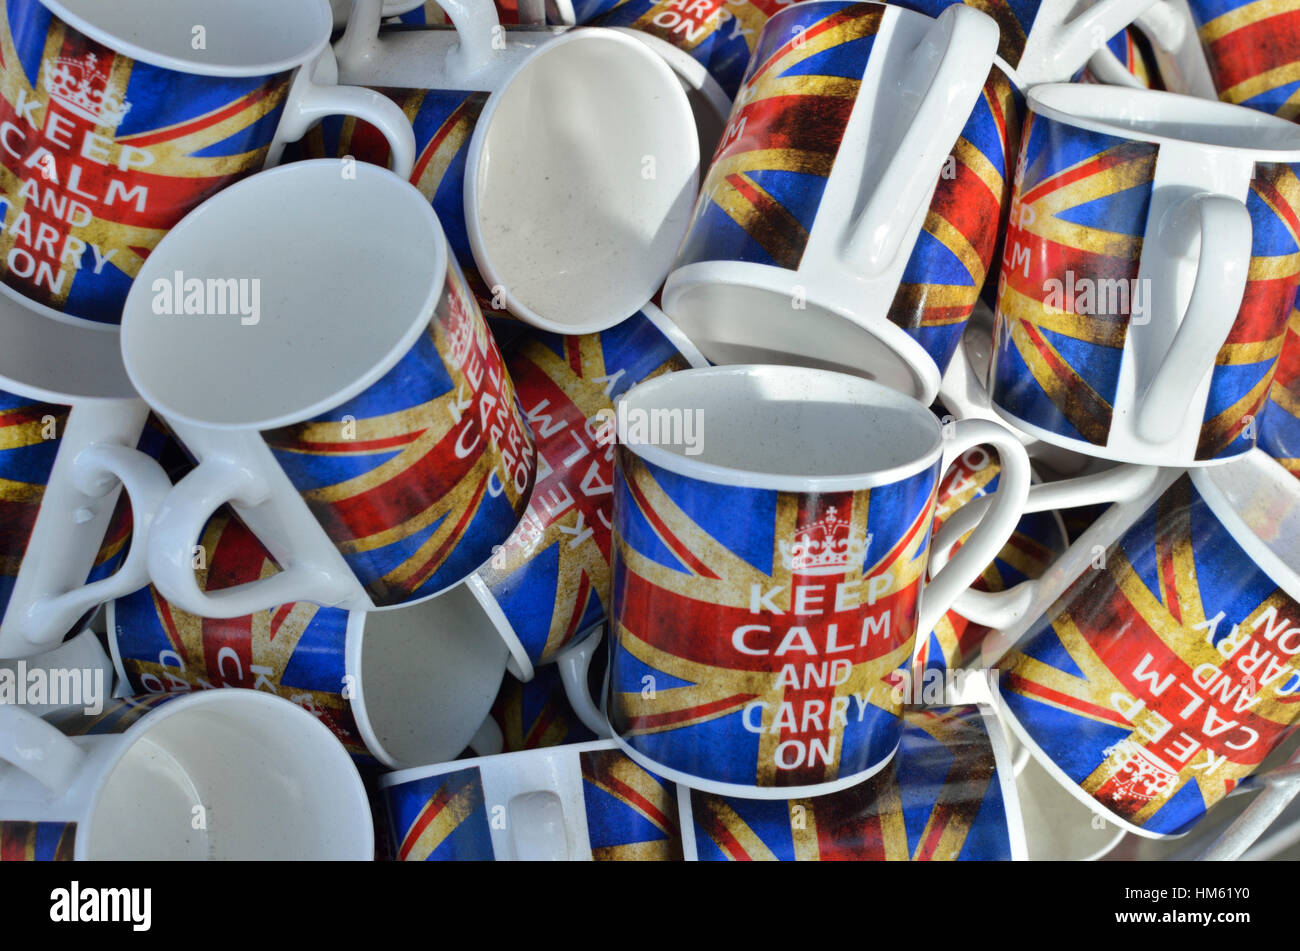 Tasses de souvenirs pour touristes portant l'Union Jack drapeau britannique et le slogan "Keep calm and carry on', London, UK Banque D'Images